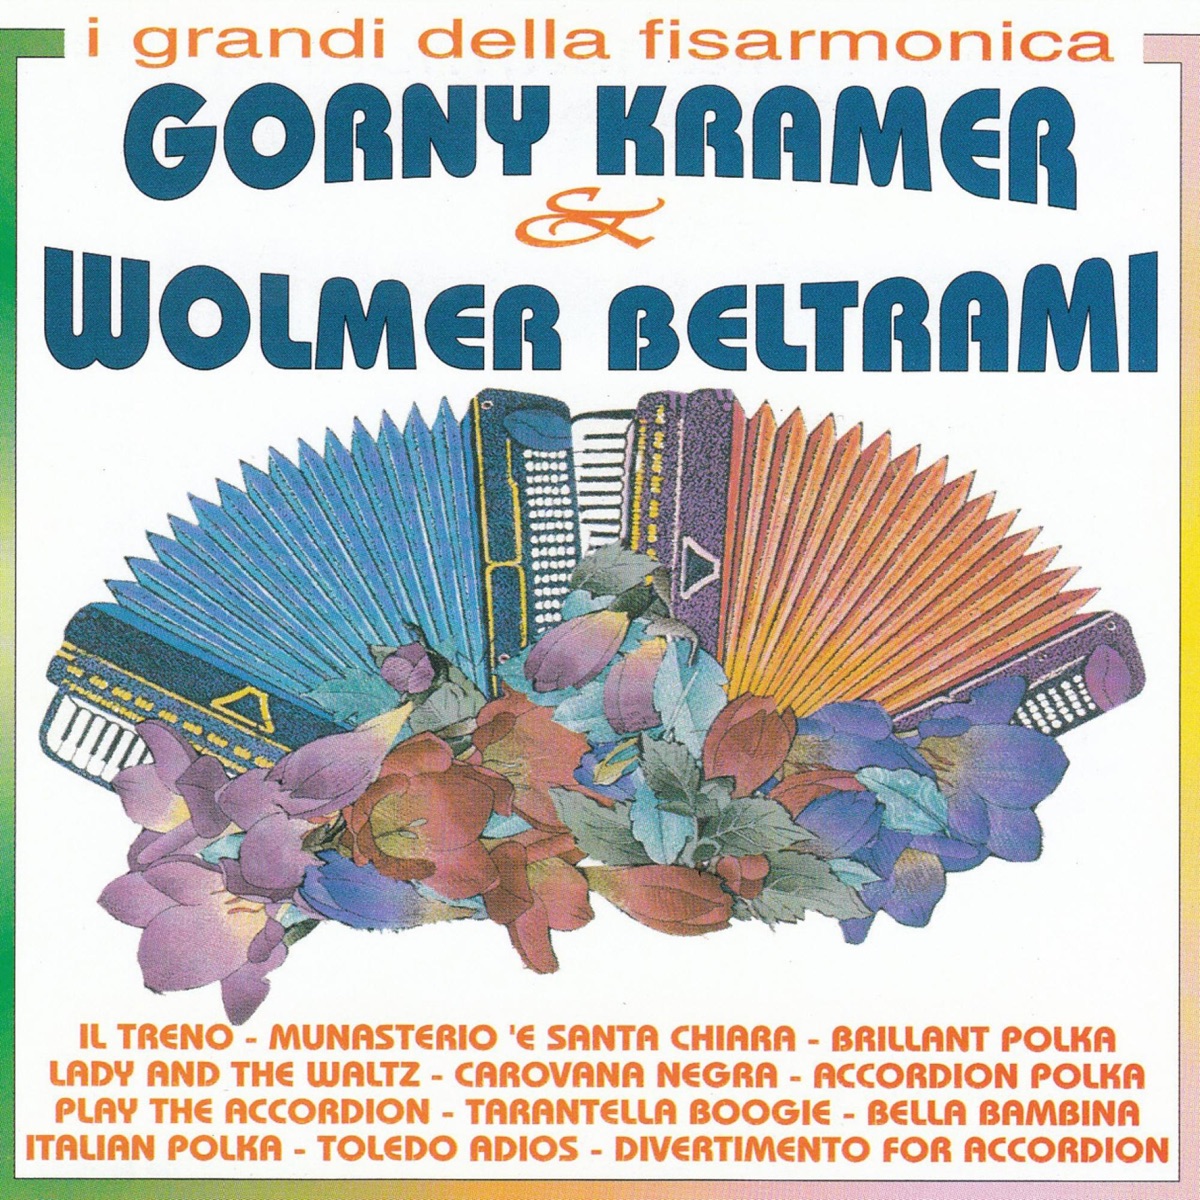 I Grandi Della Fisarmonica - Album di Gorni Kramer & Wolmer Beltrami -  Apple Music